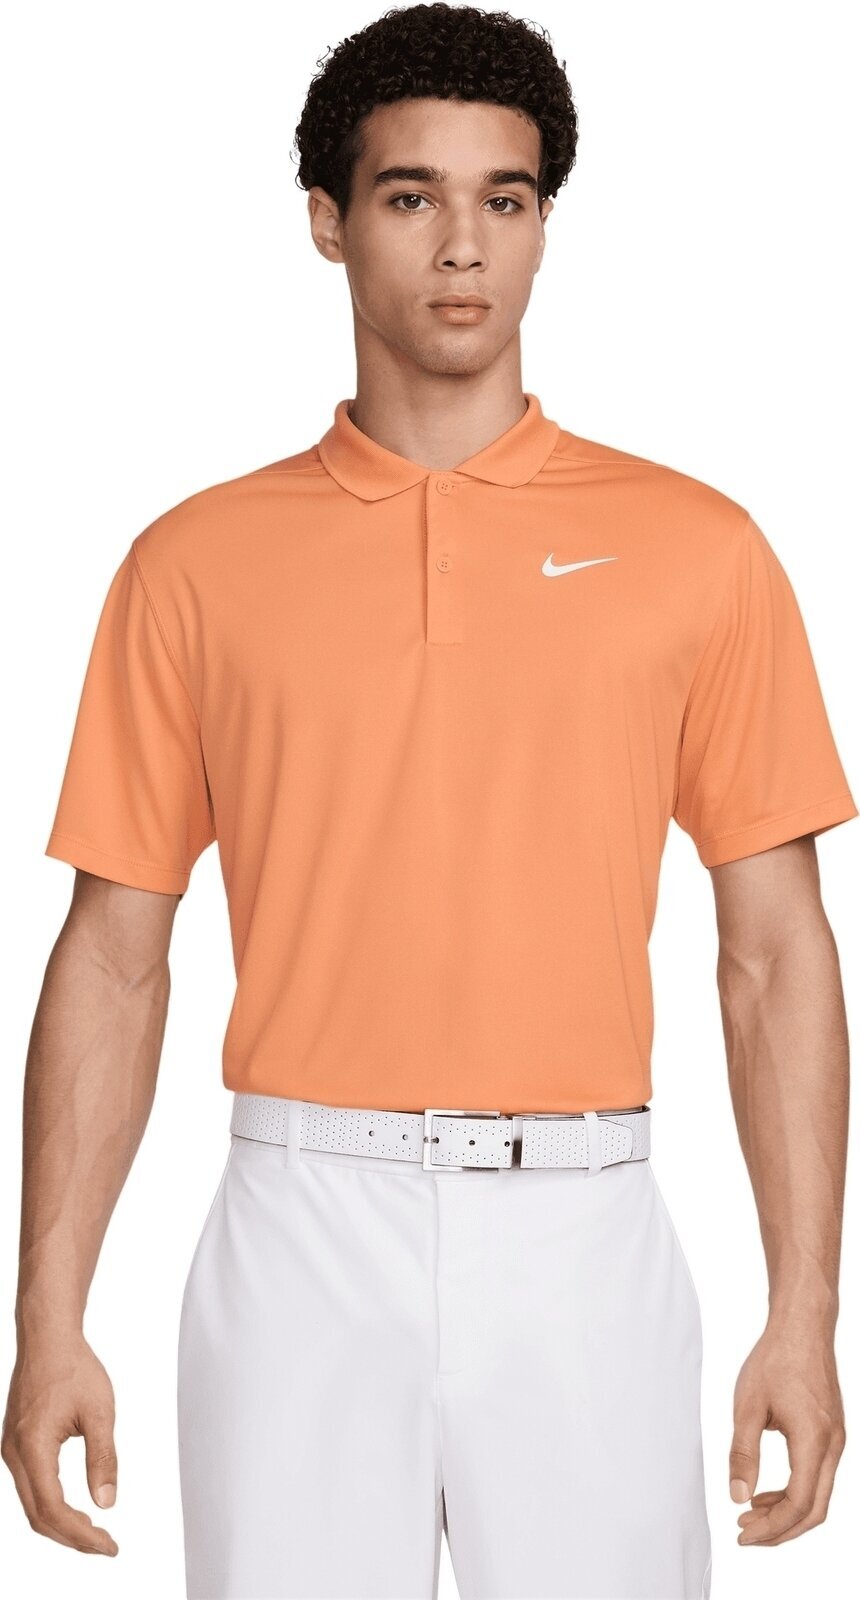 Polo košile Nike Dri-Fit Victory Solid Mens Polo Orange Trance/White M Polo košile